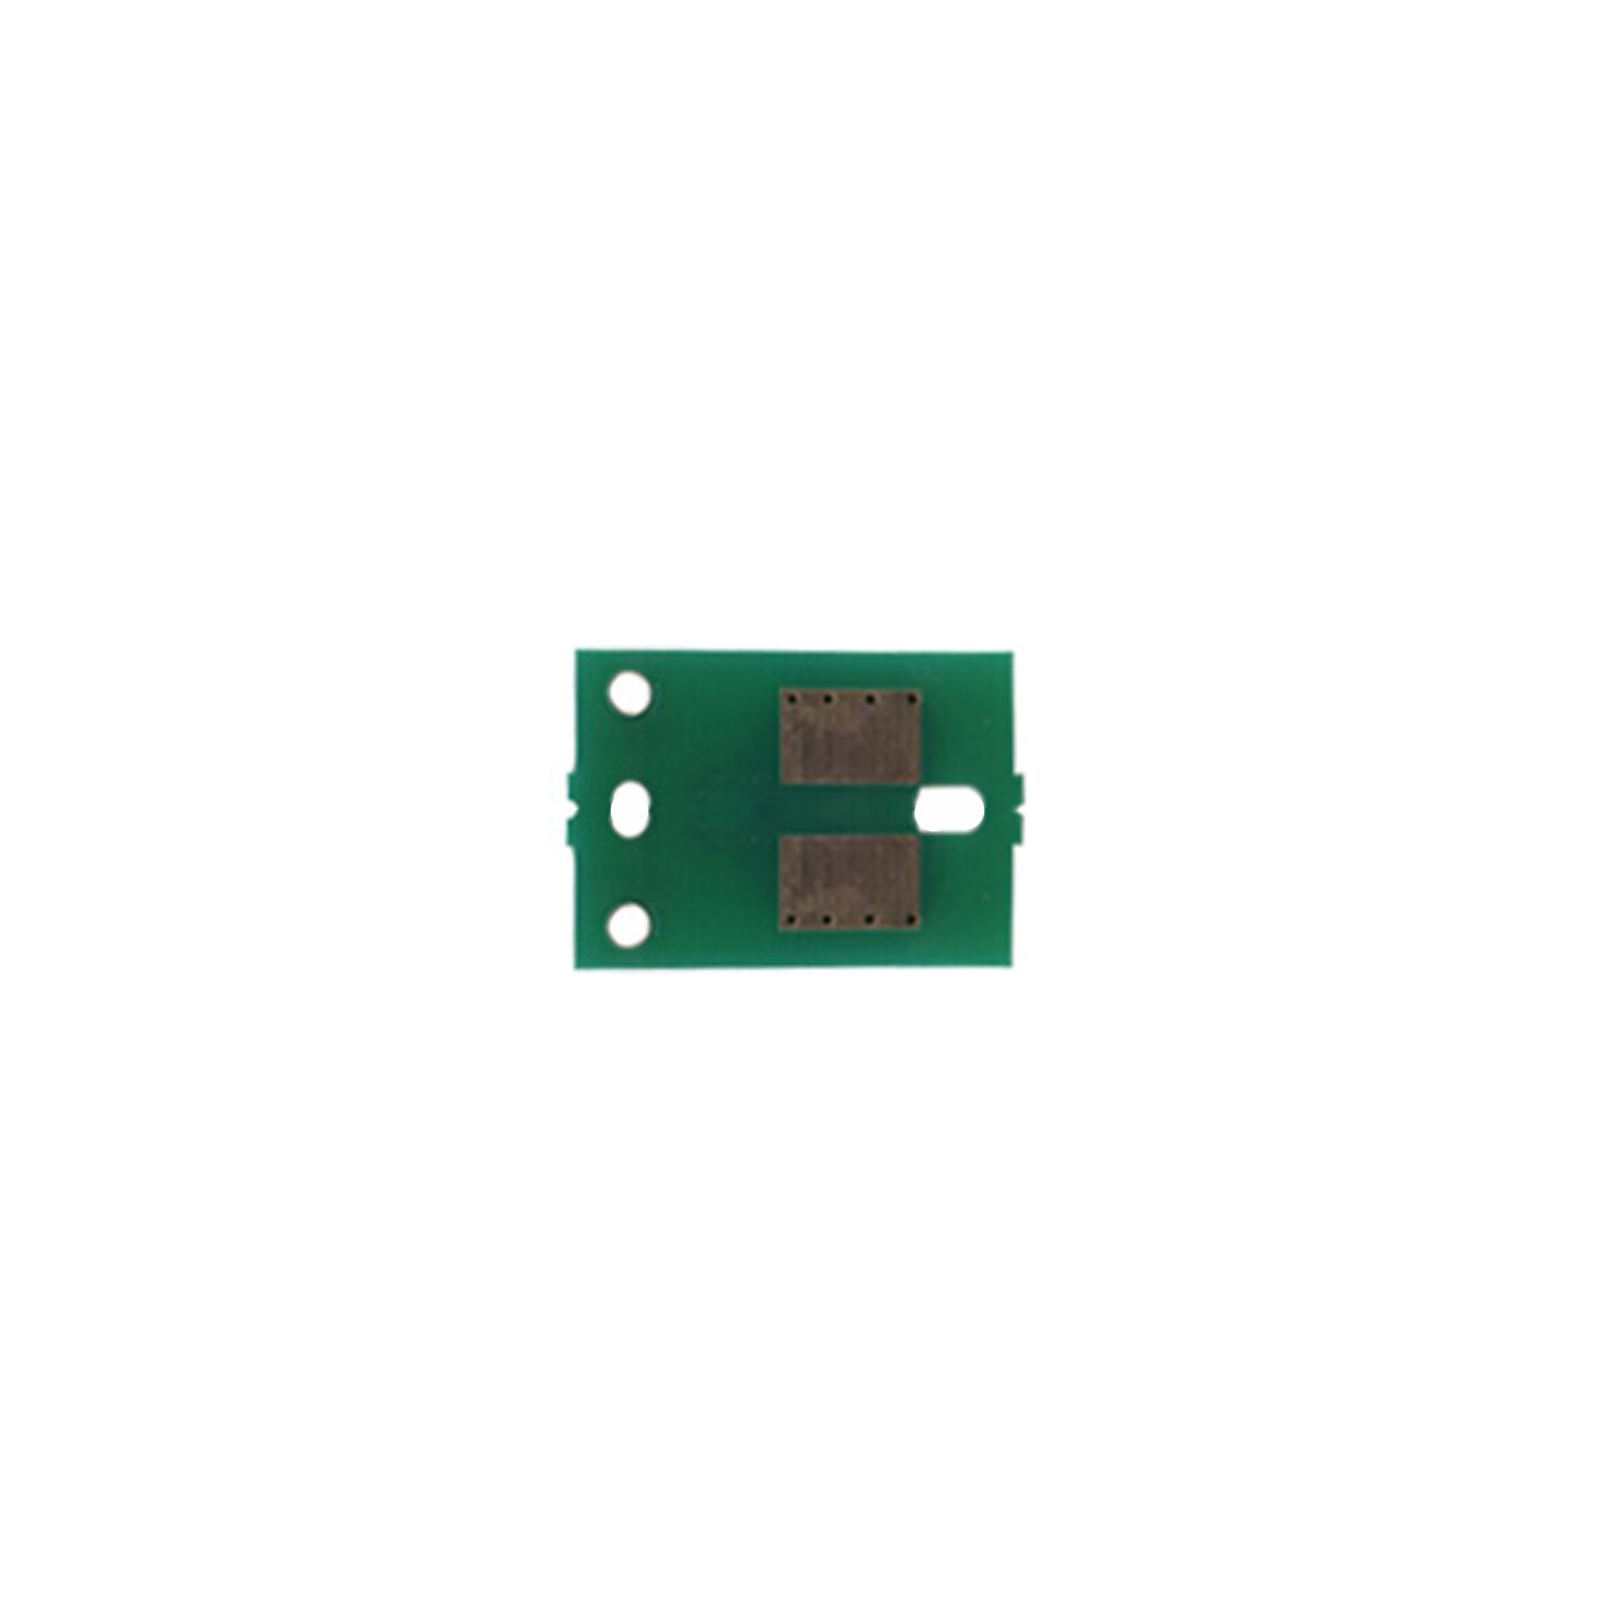 Чип для картриджа Panasonic KX-MB1500/MB1520 BASF (WWMID-72845)